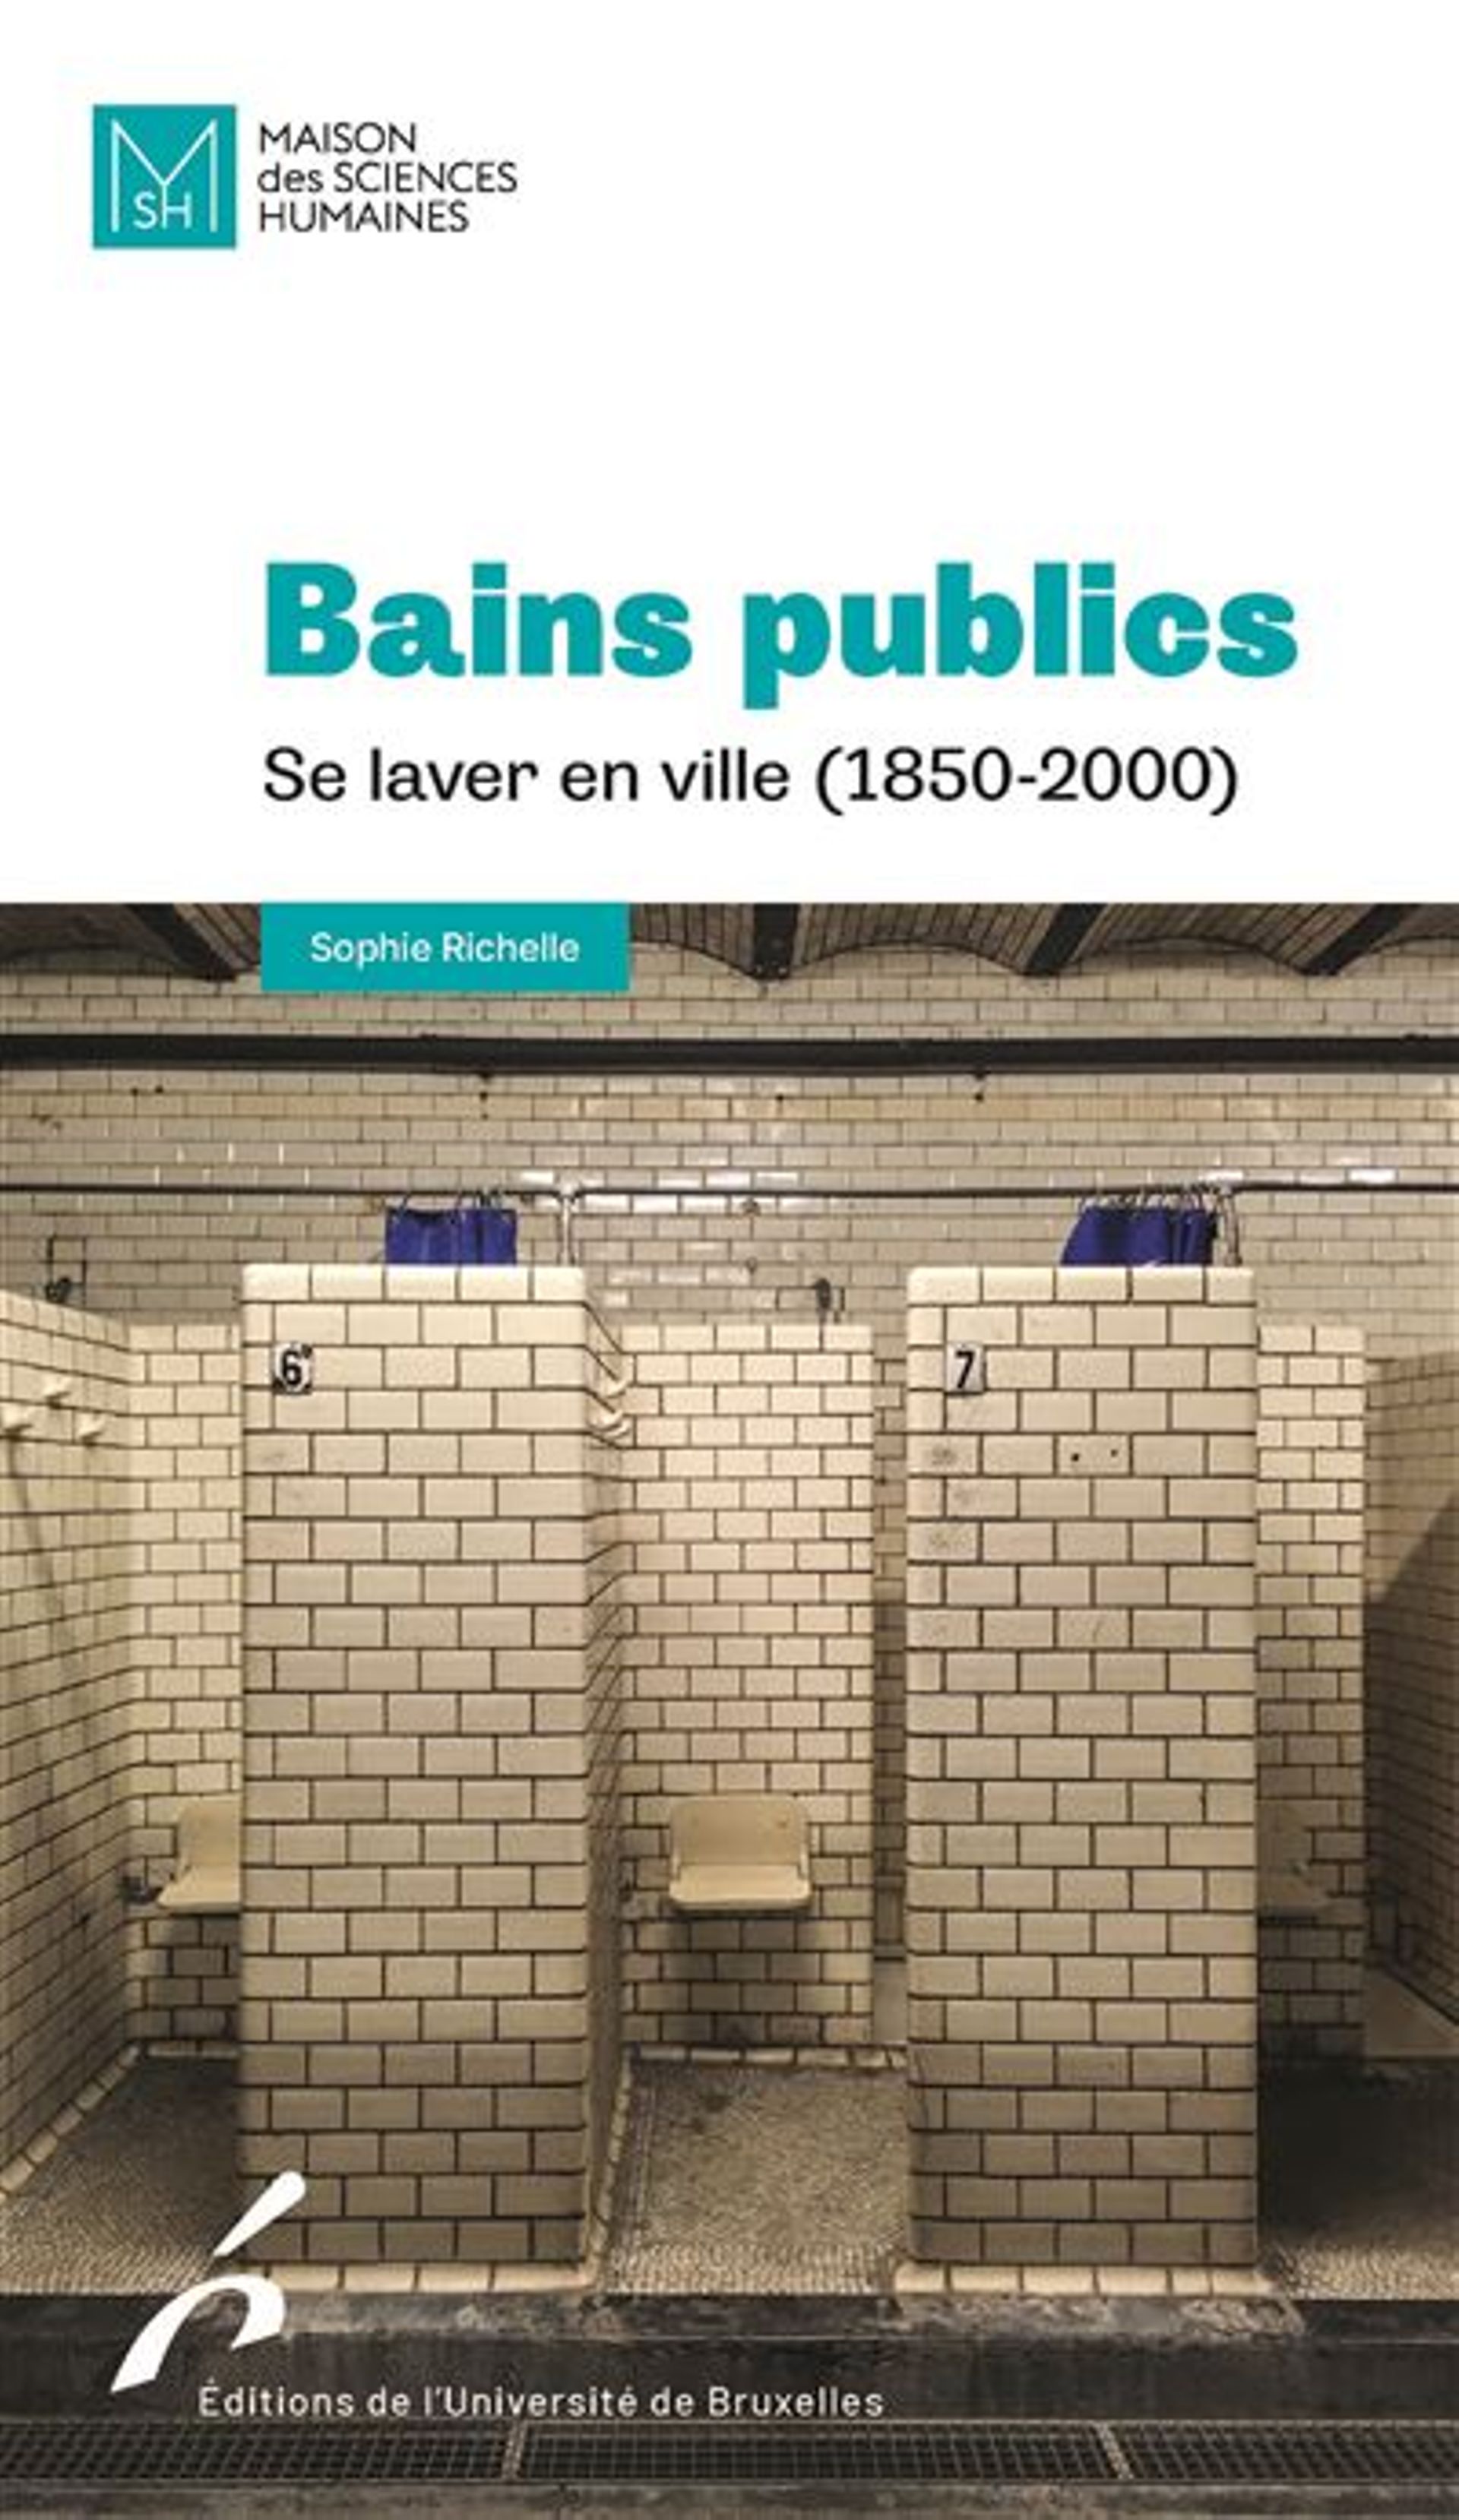 « Bains publics. Se laver en ville (1850-2000) », par Sophie Richelle, éditions de l’Université de Bruxelles, 2023. 